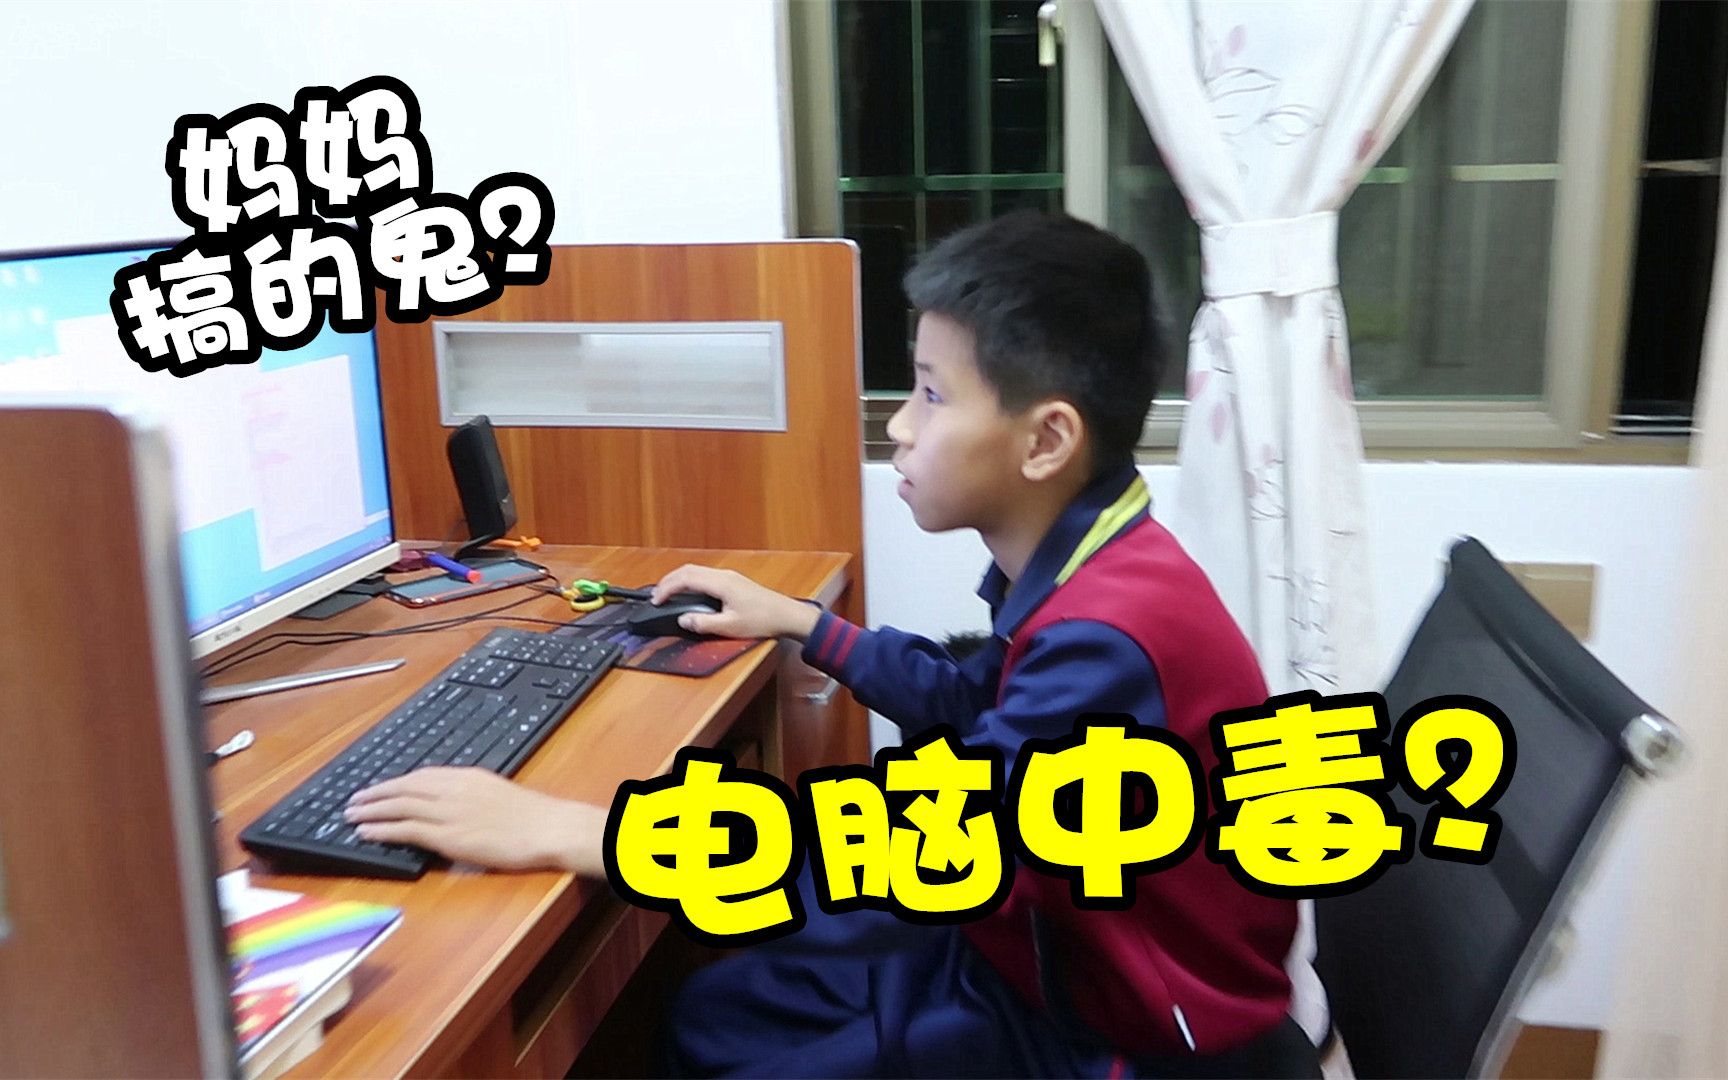 小男孩天天在家敲代码做编程，妈妈好奇试玩，竟让电脑中病毒了